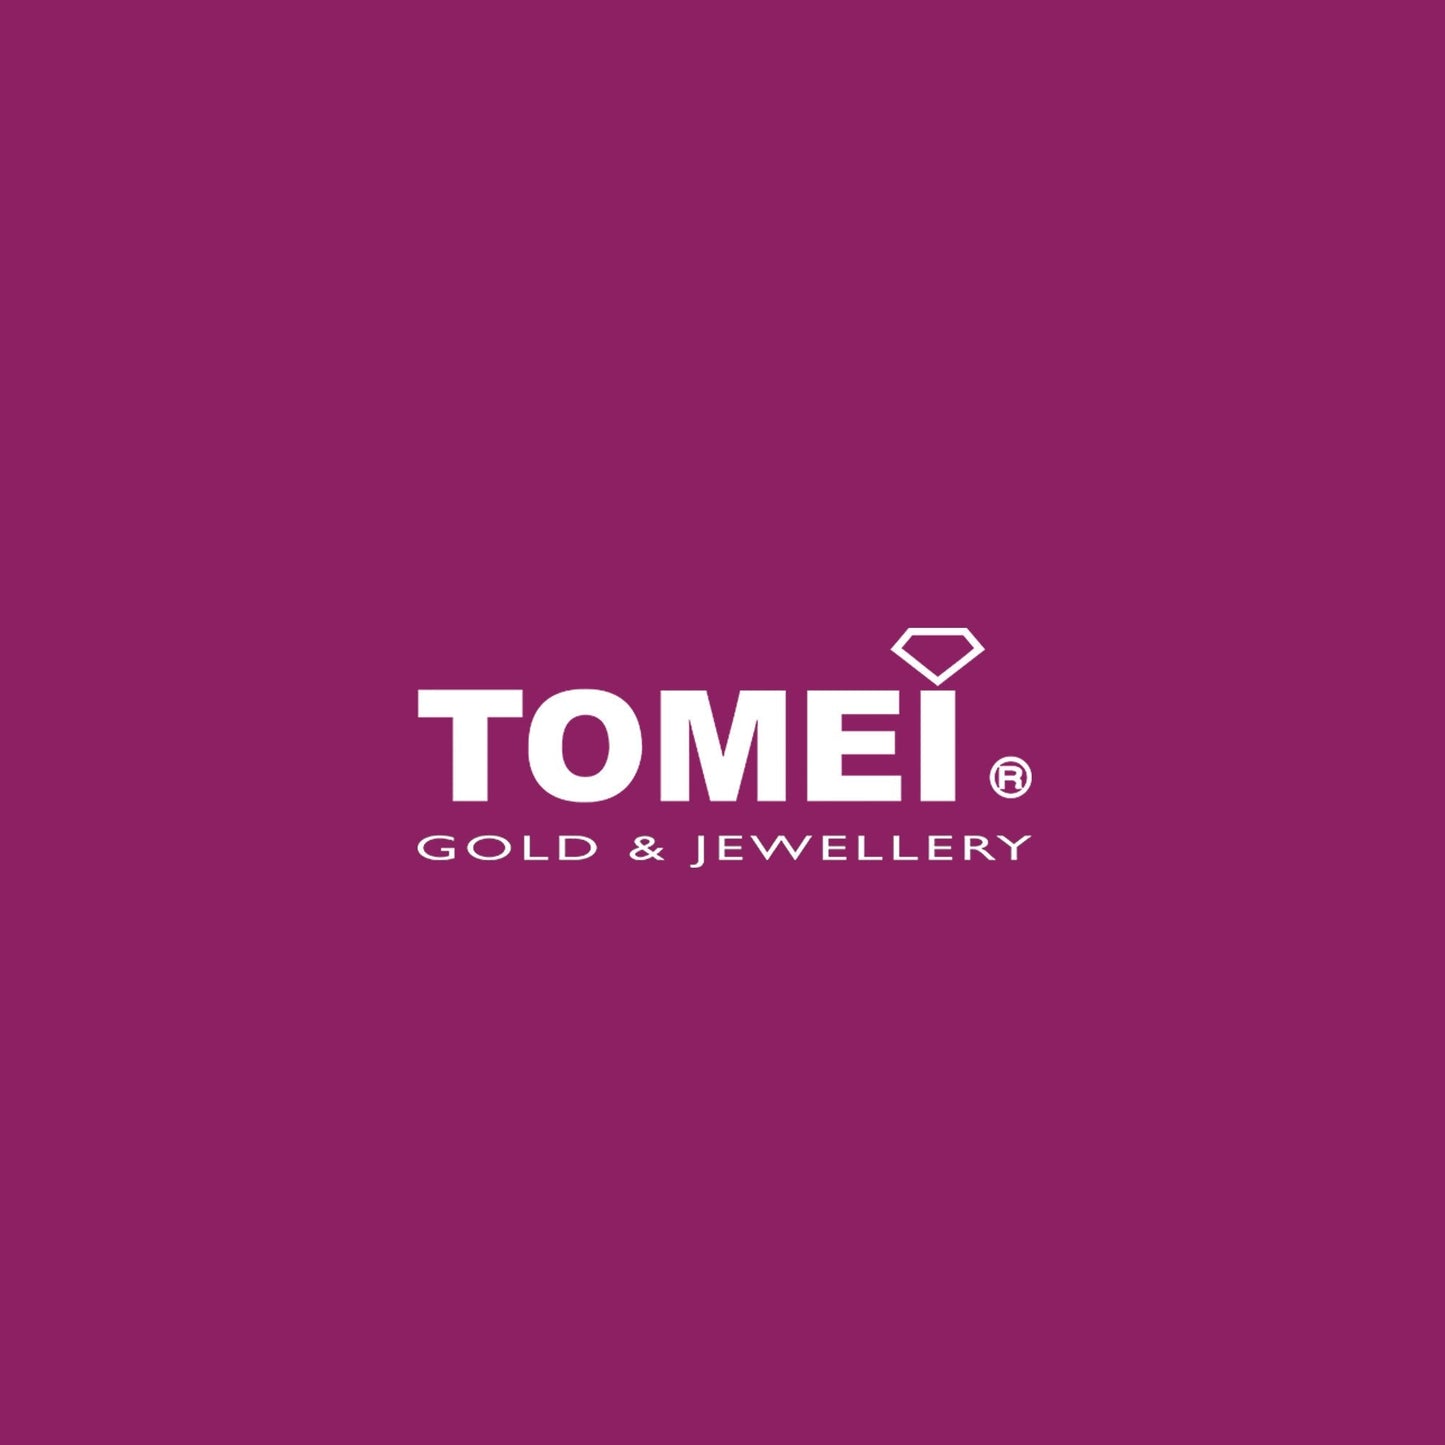 TOMEI Dangling Charm Of Huat, Yellow Gold 916